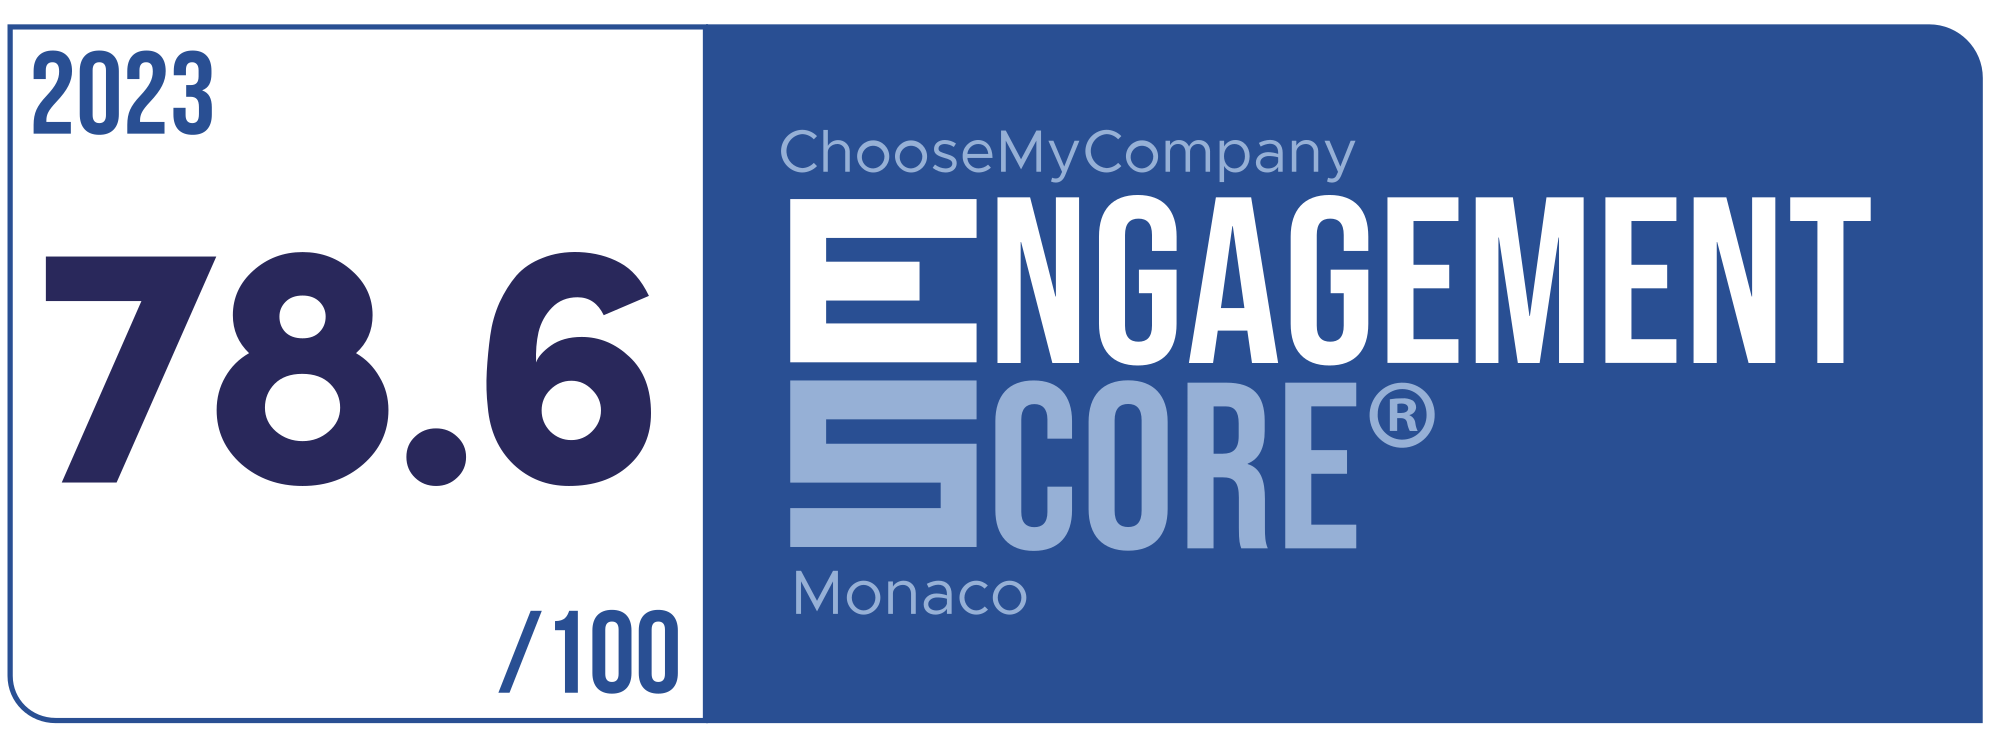 Label Engagement Score 2023 Monaco